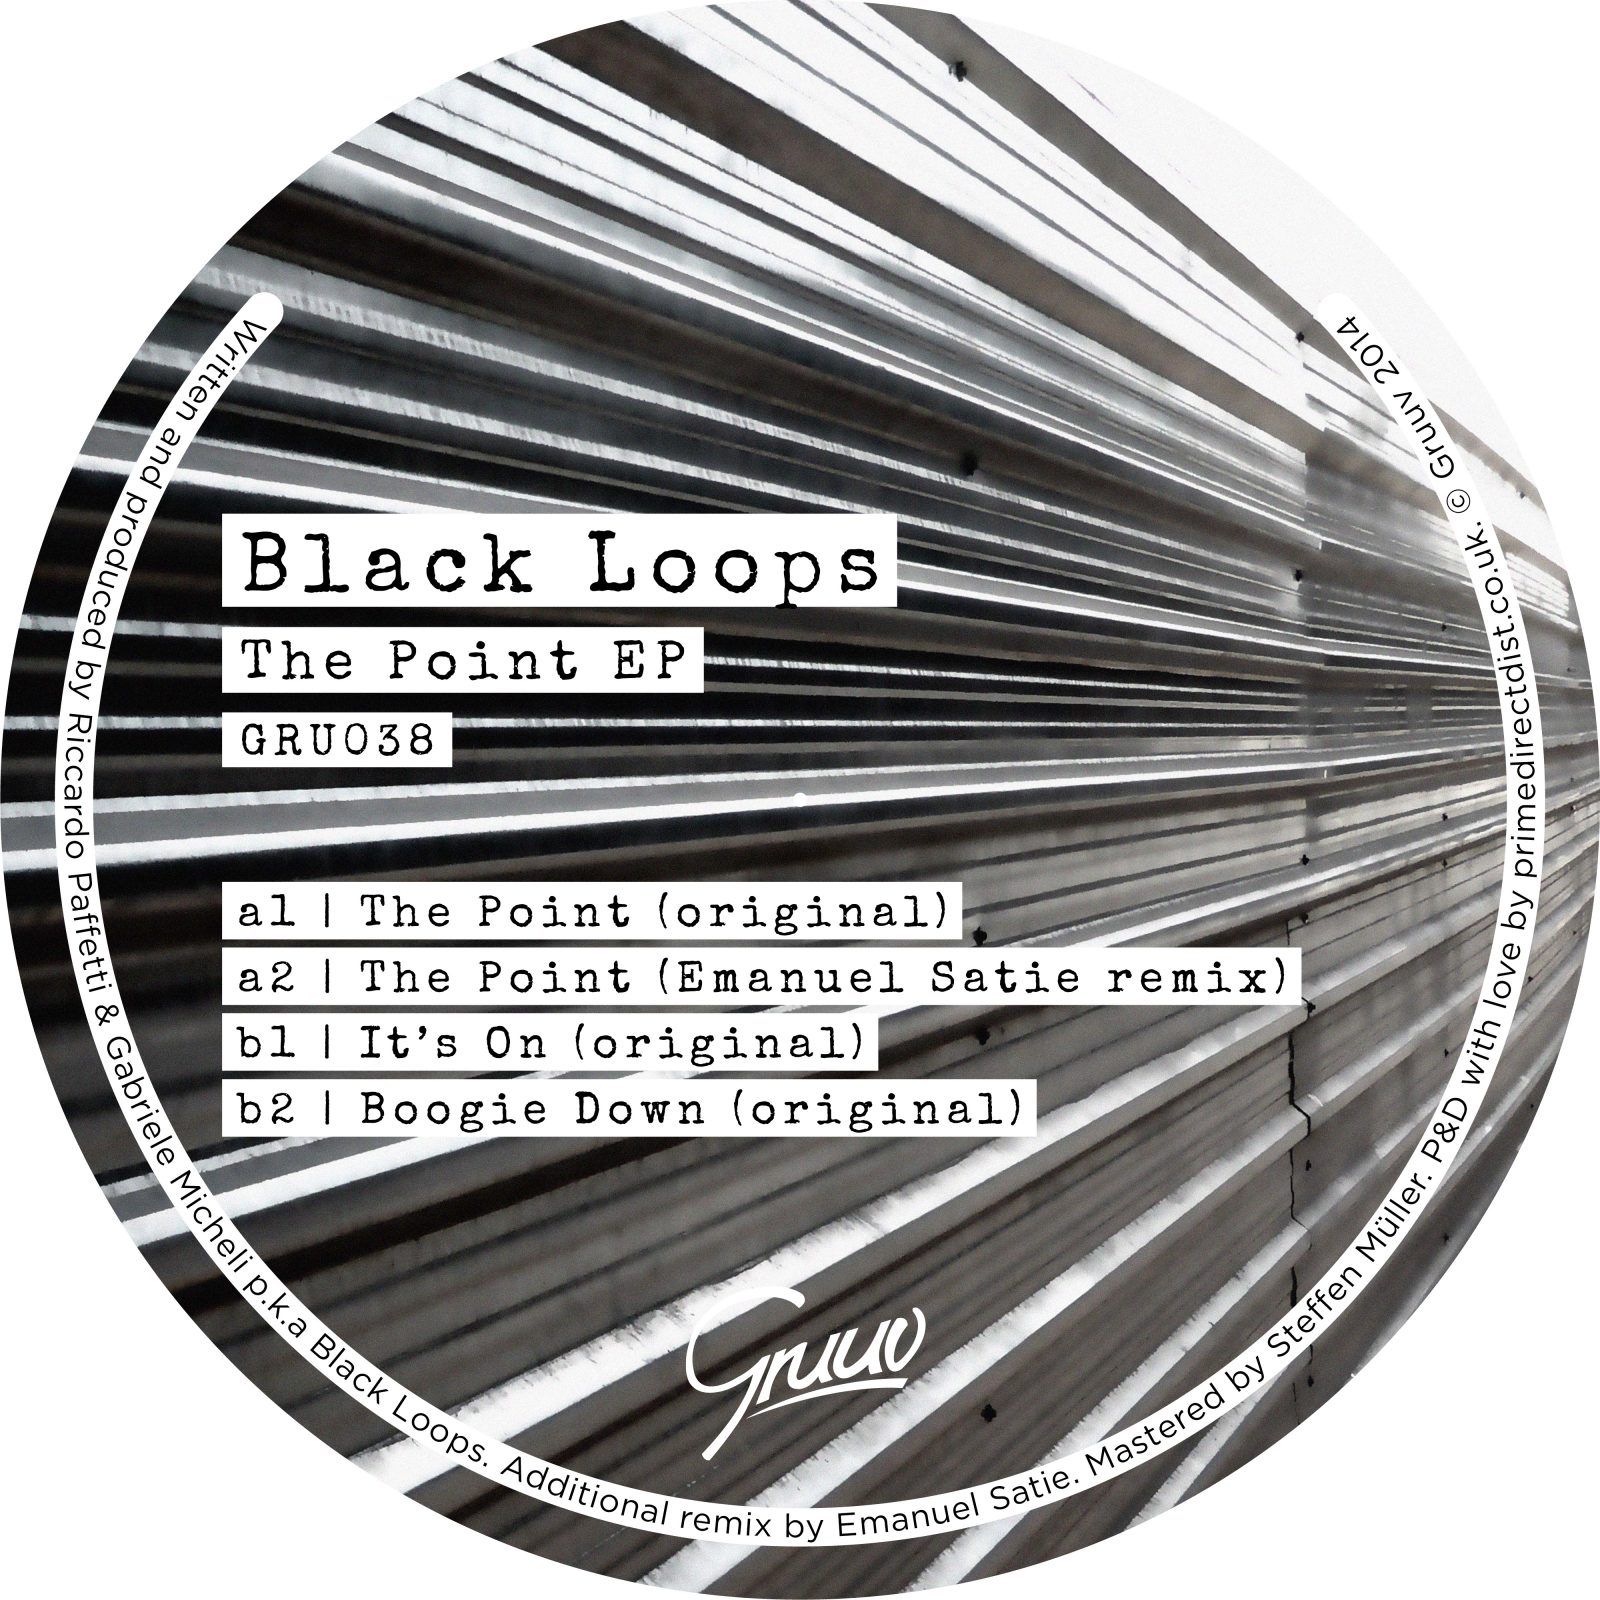 blackloops.jpg